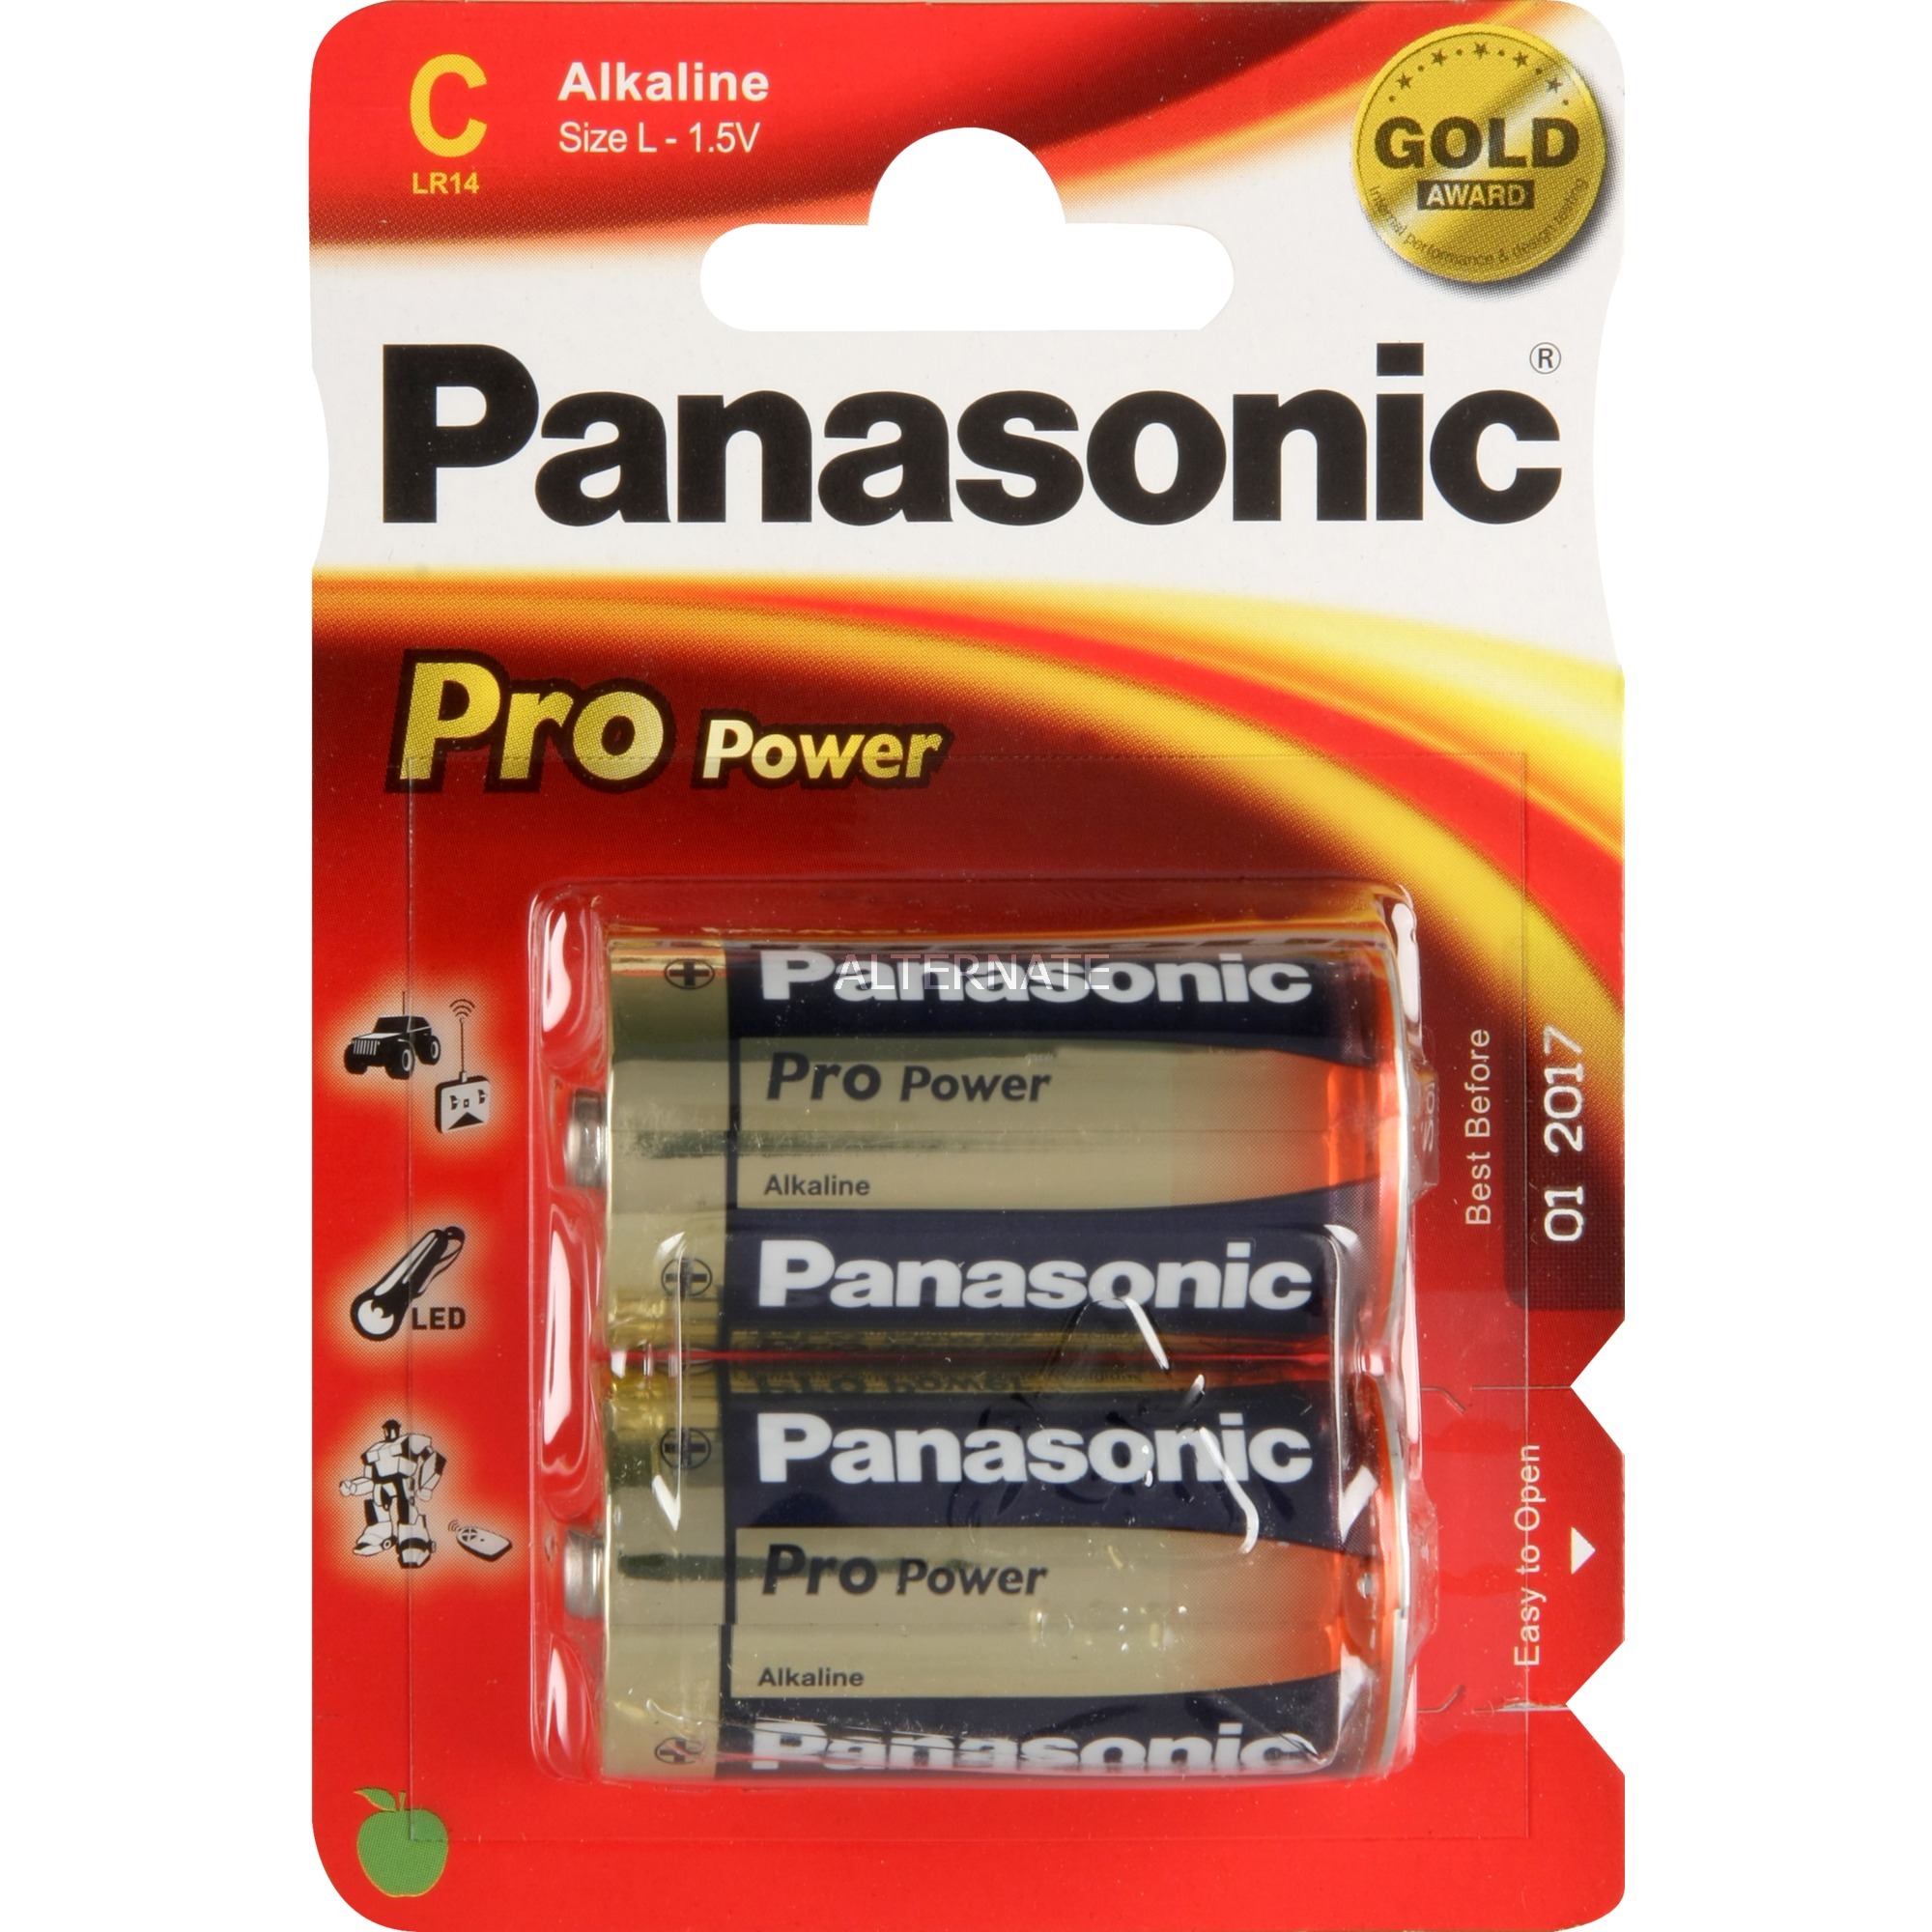 Image of Alternate - Pro Power Gold C LR14PPG/2BP, Batterie online einkaufen bei Alternate